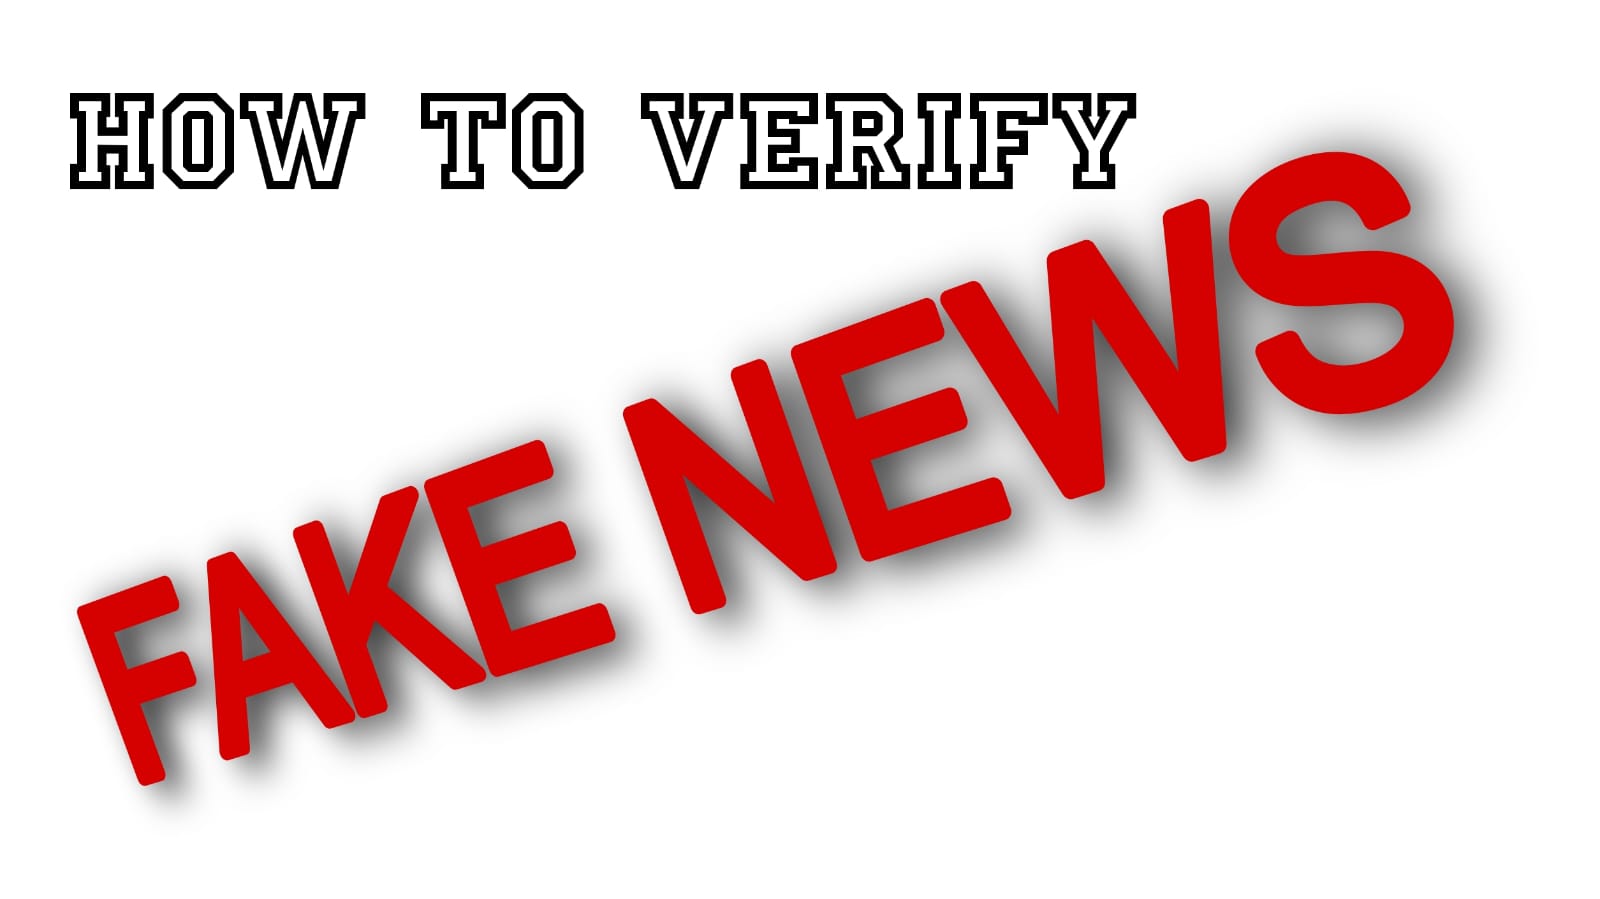 How to verify fake news